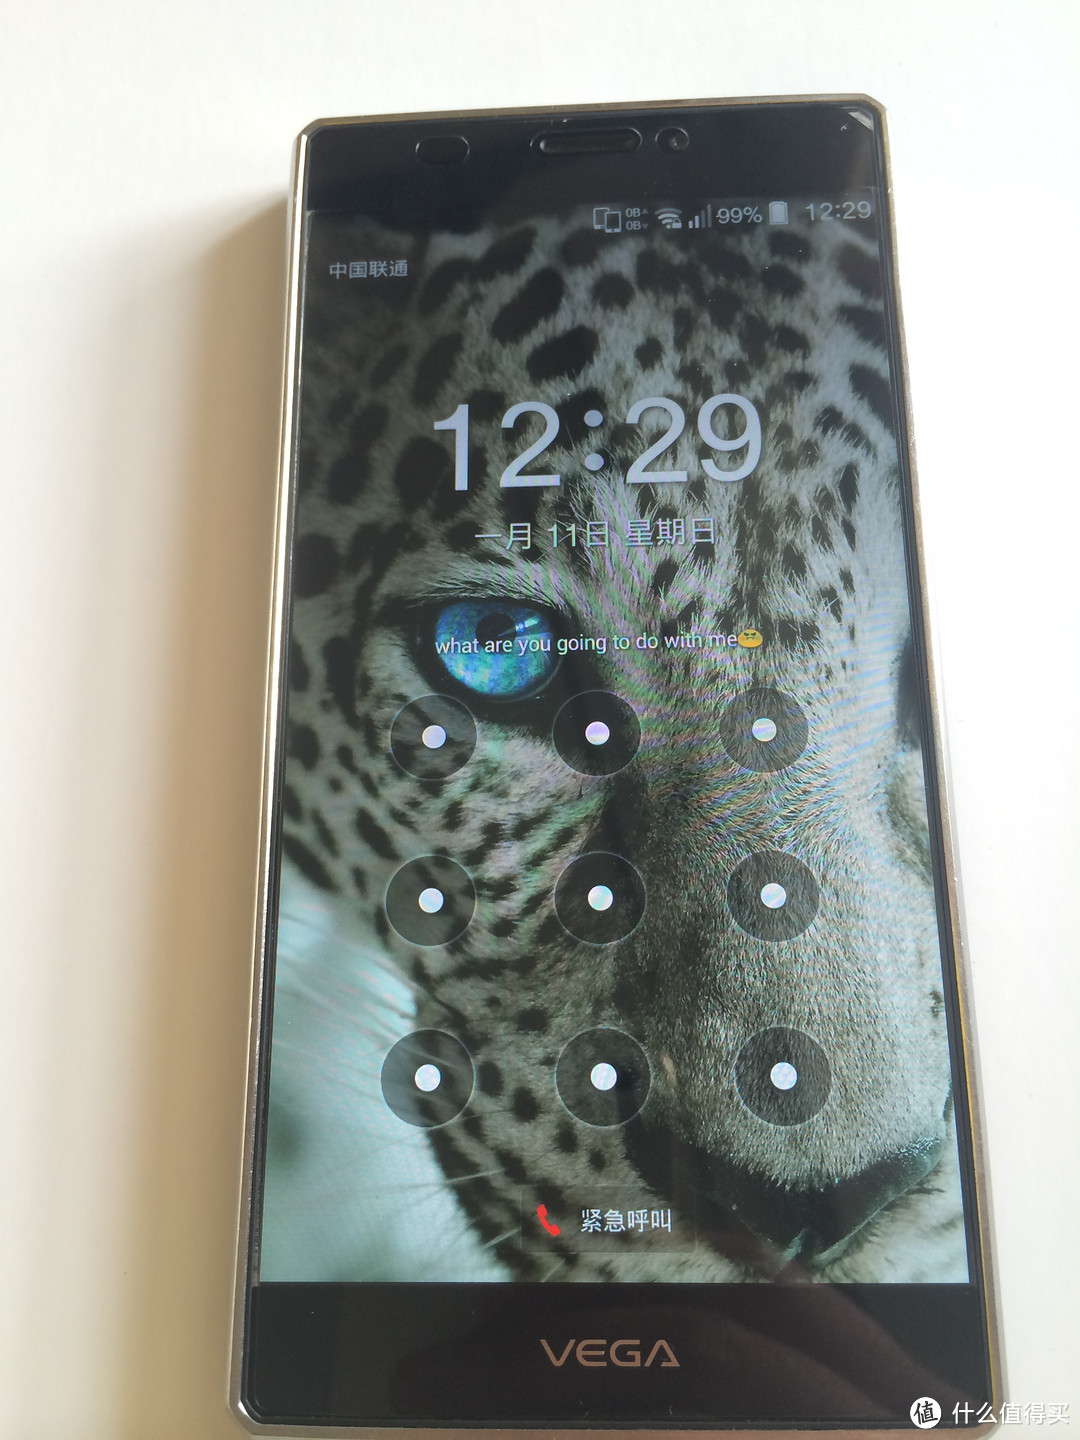 外观党灯迷的备用机：泛泰SKY vega IRON A870 手机 纯外观展示